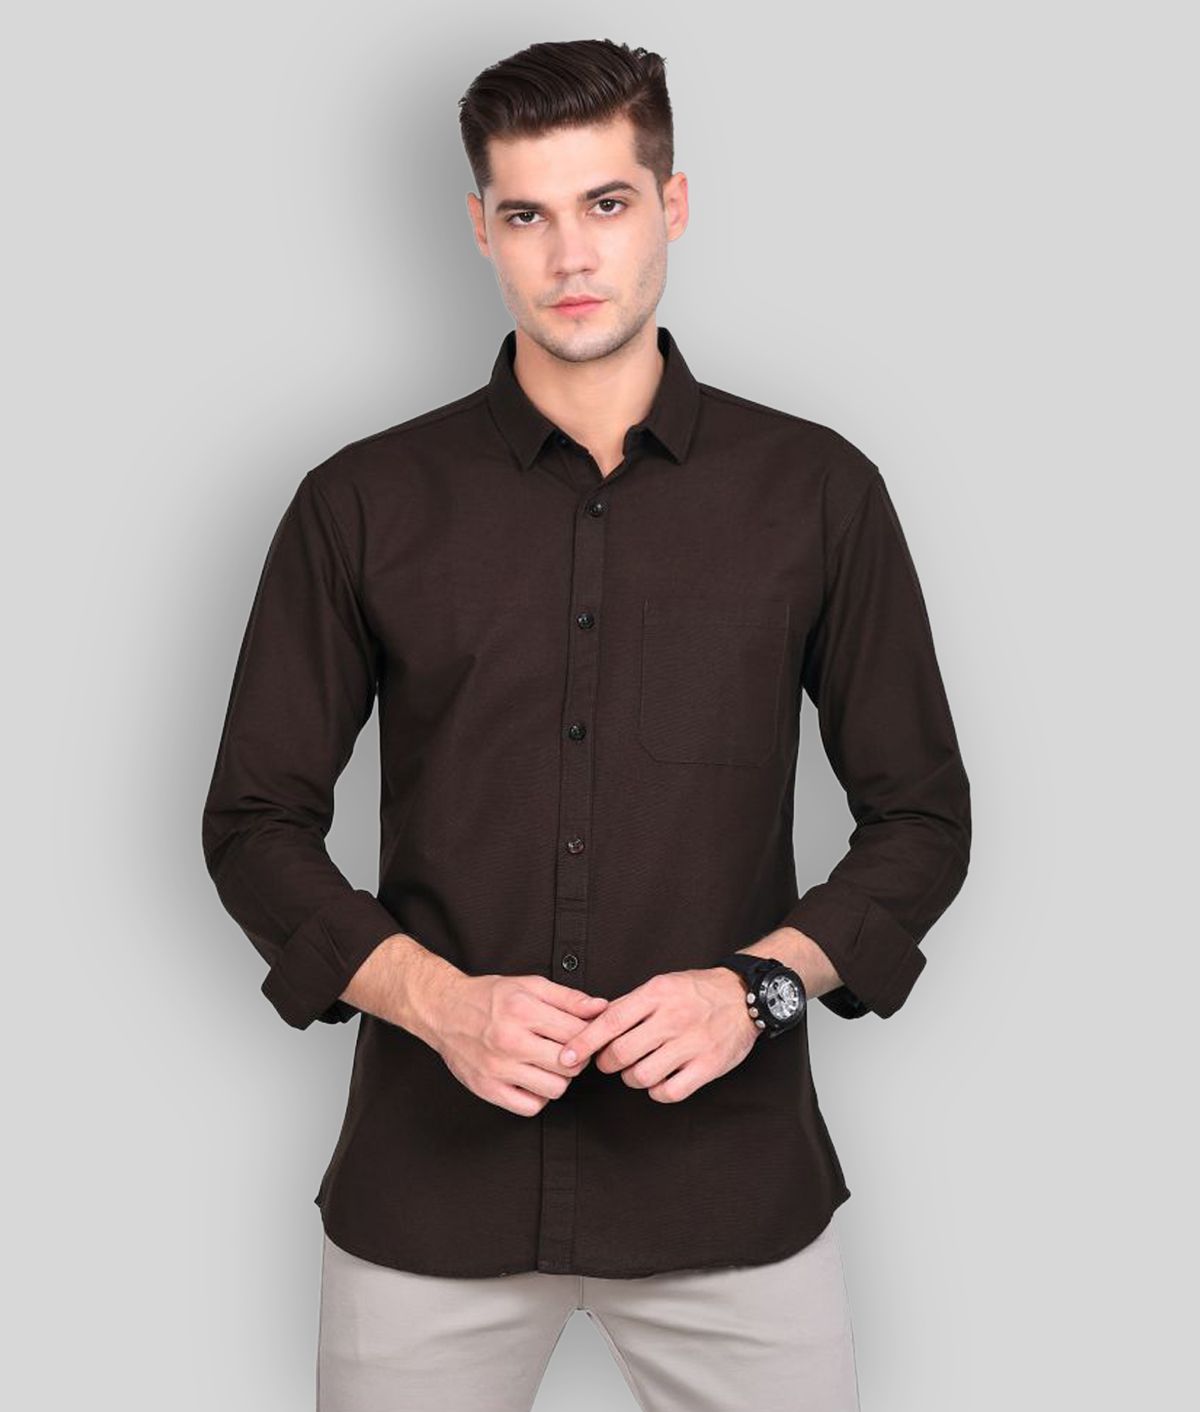 Paul Street - Brown Linen Slim Fit Men's Casual Shirt ( Pack of 1 )